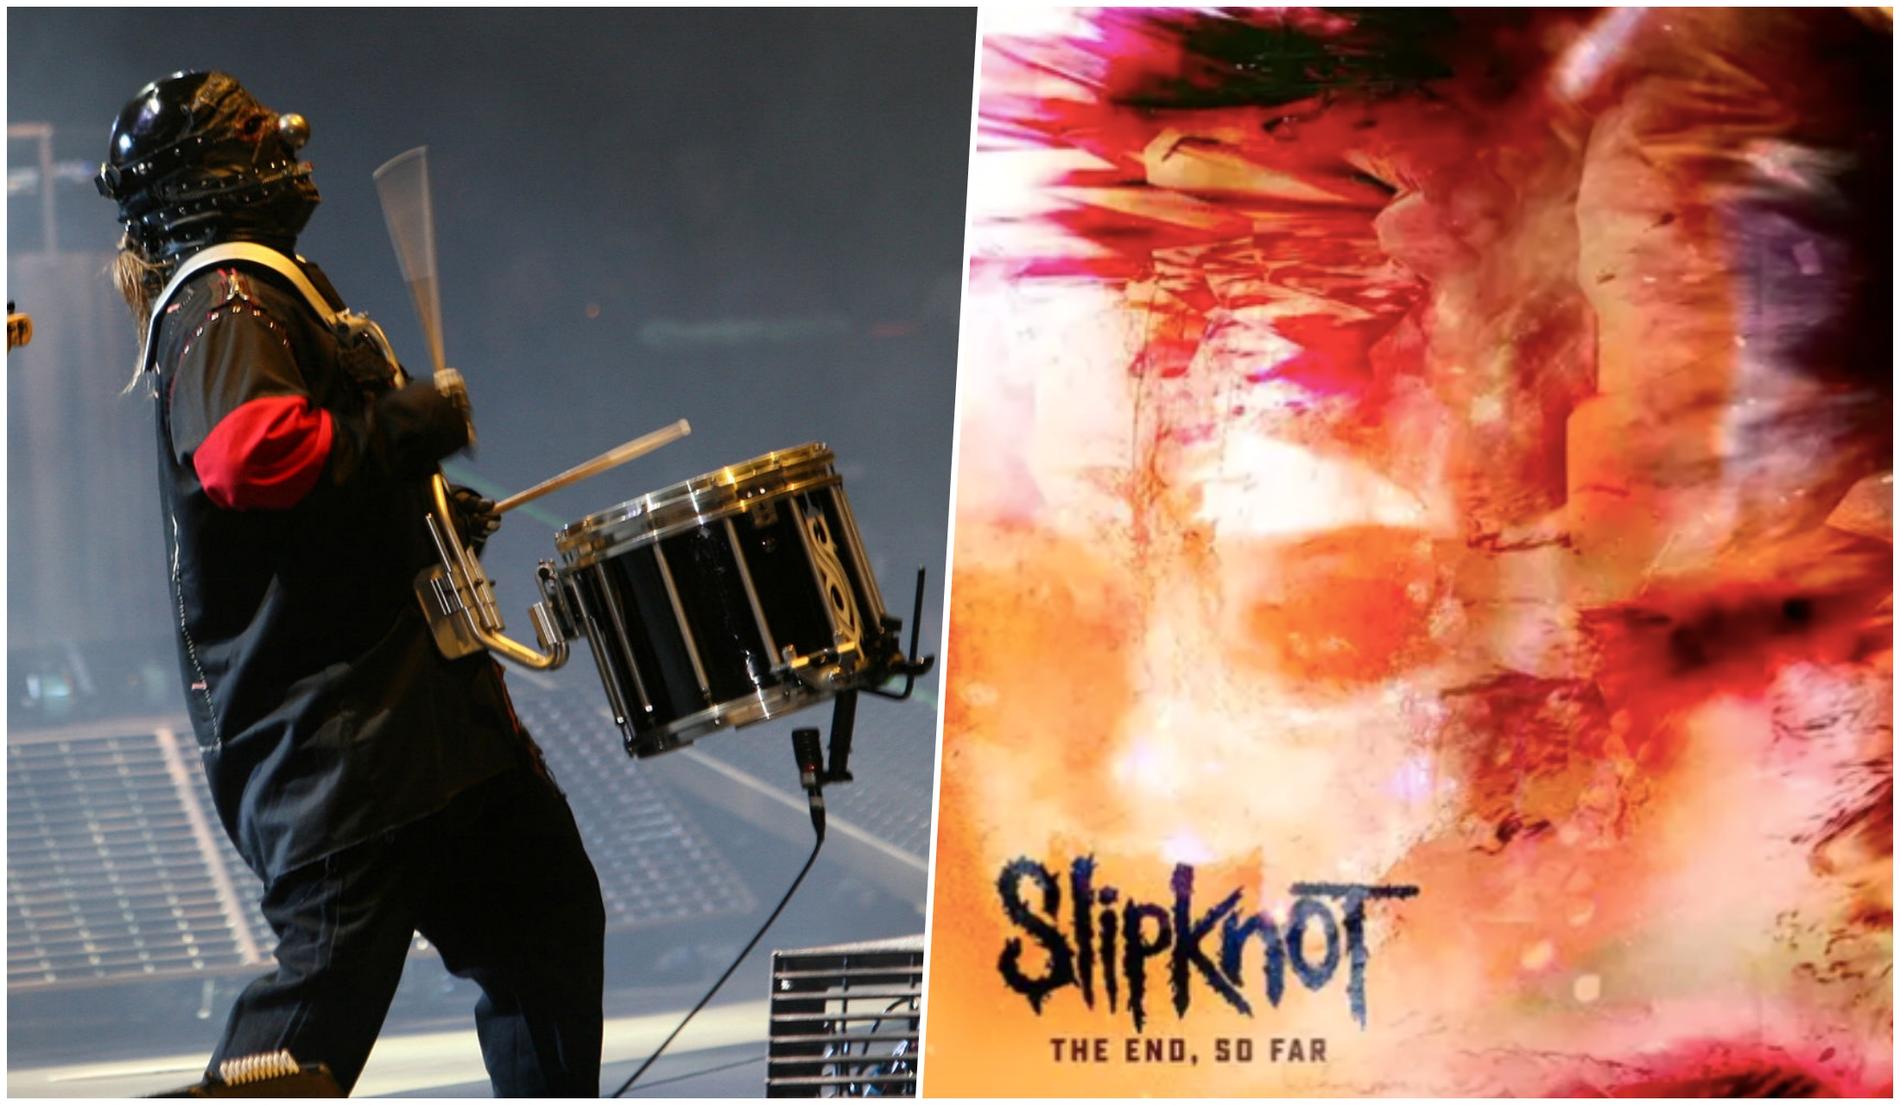 Slipknots slagverkare Shawn ”Clown” Crahan vill att Slipknot ska överge albumformatet och istället satsa på singlar.